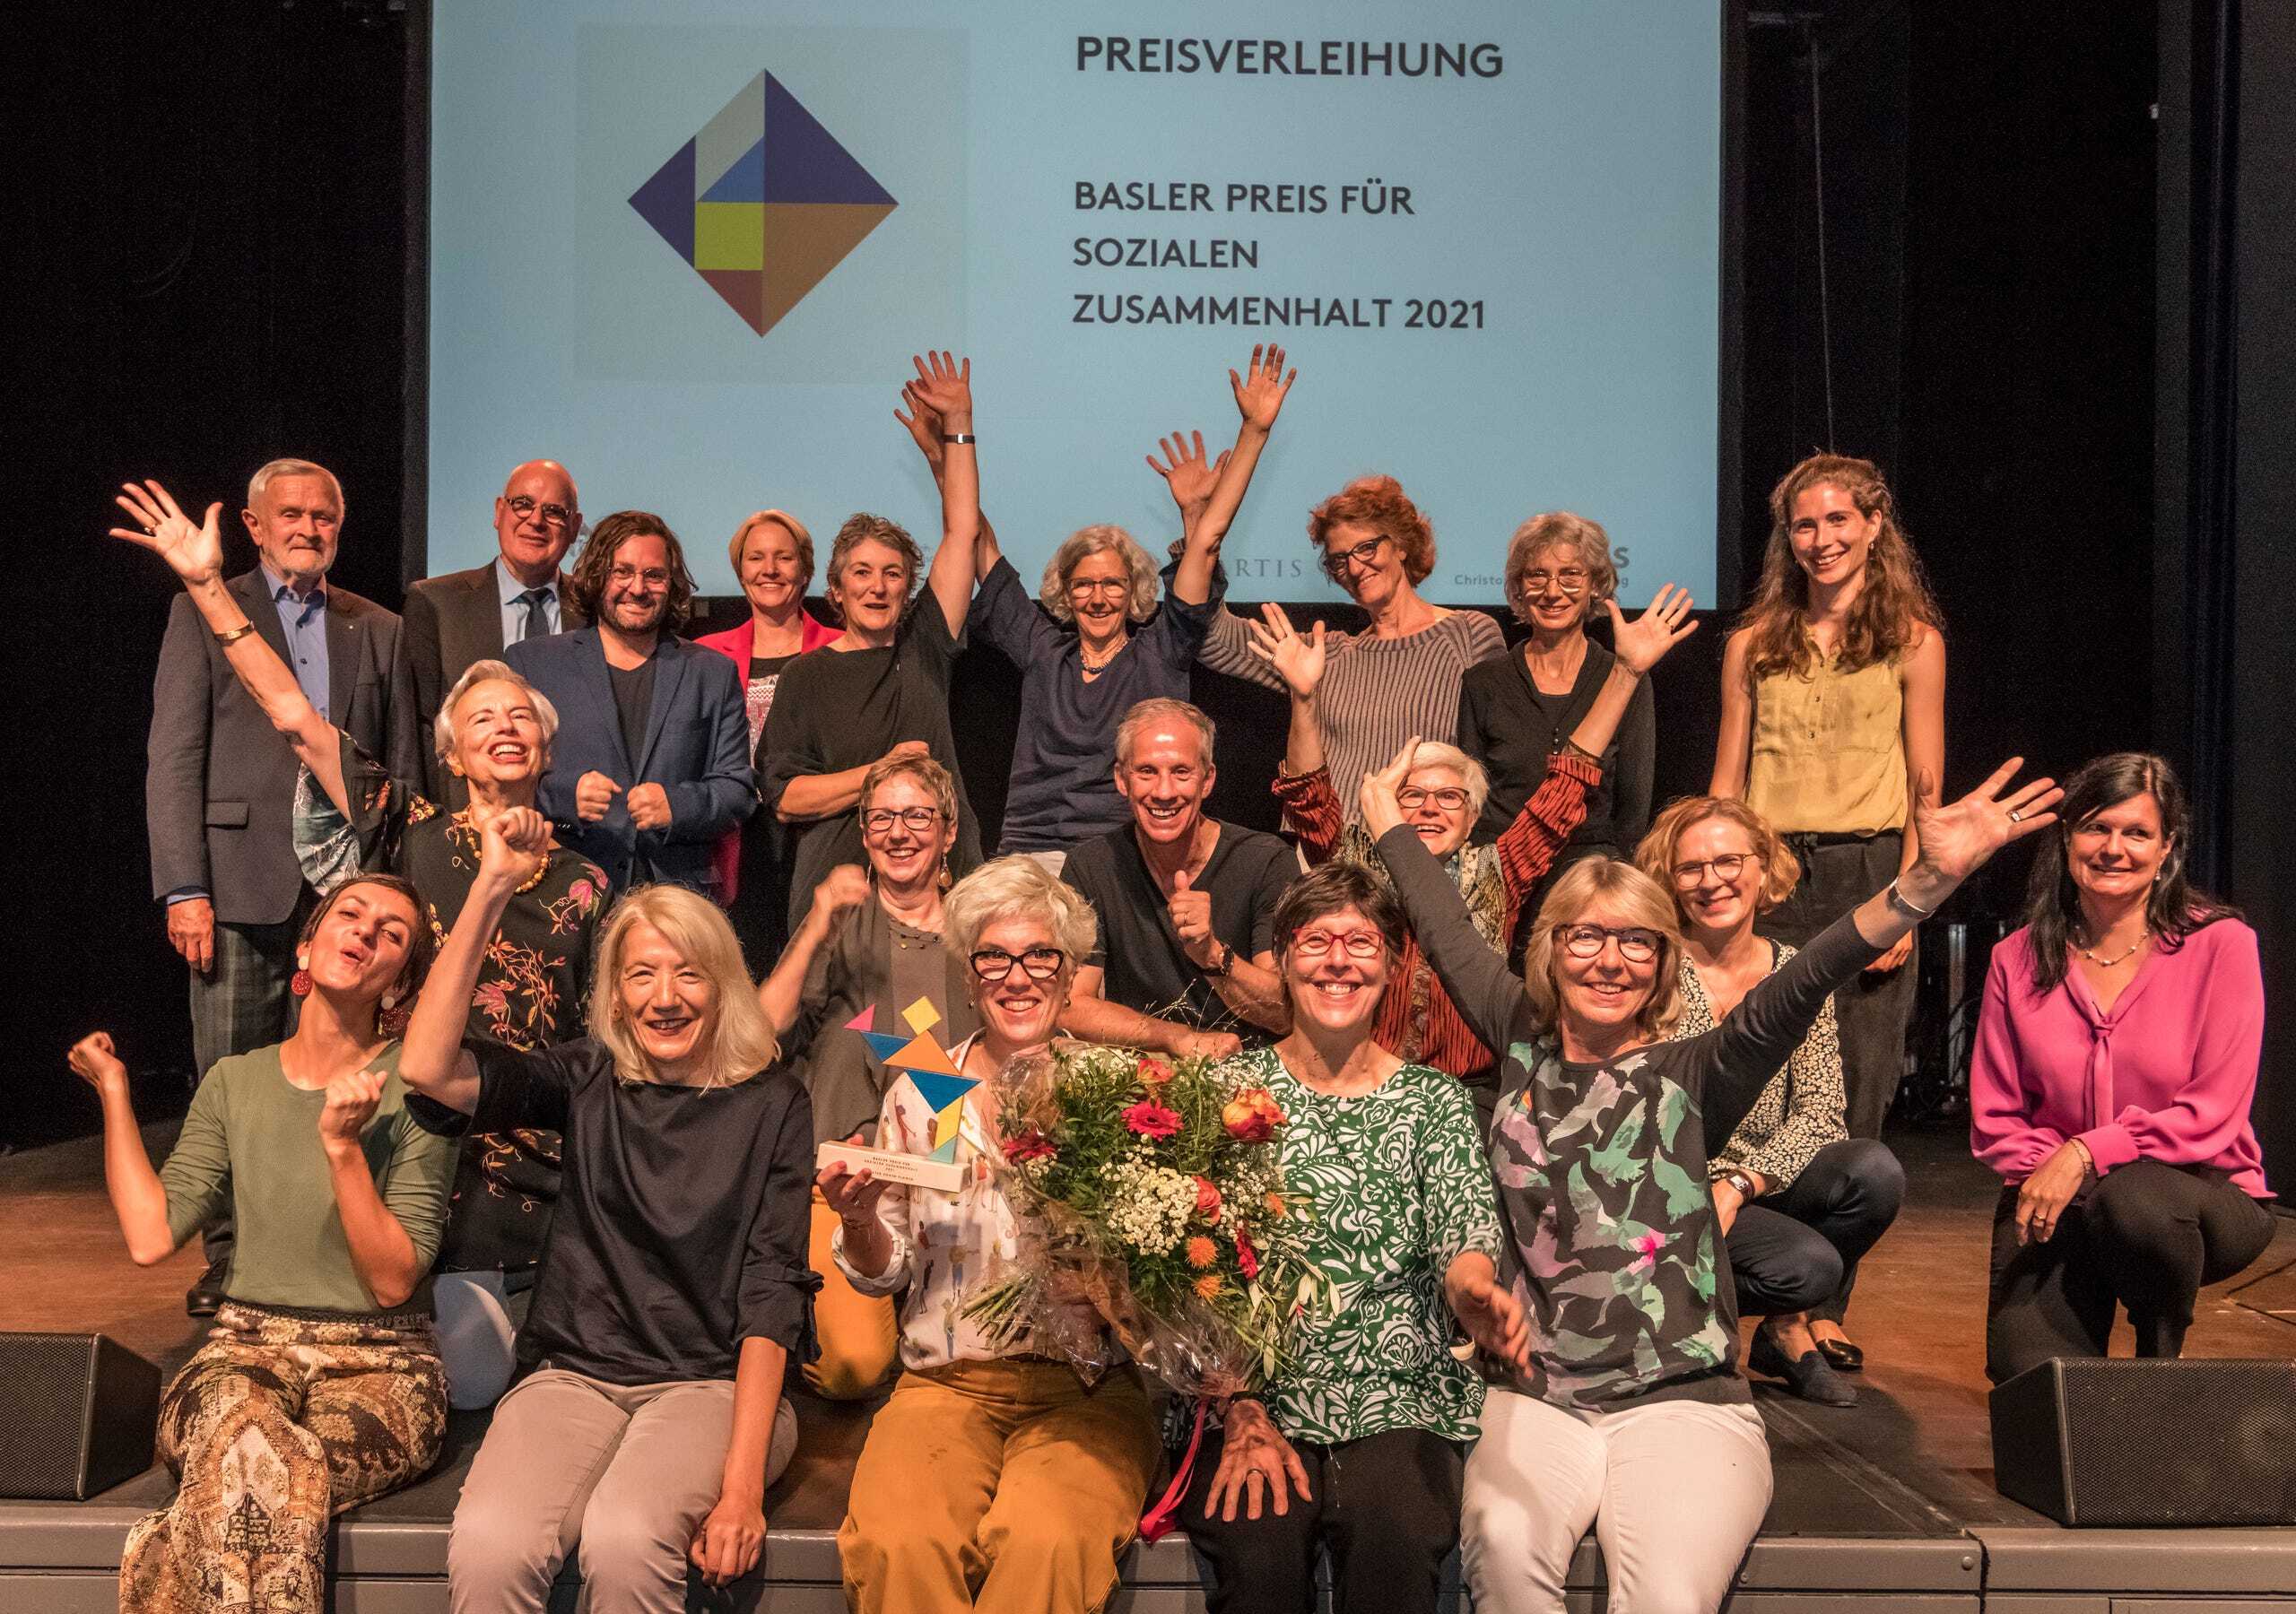 Theater Power Flower gewinnt den Basler Preis für Zusammenhalt